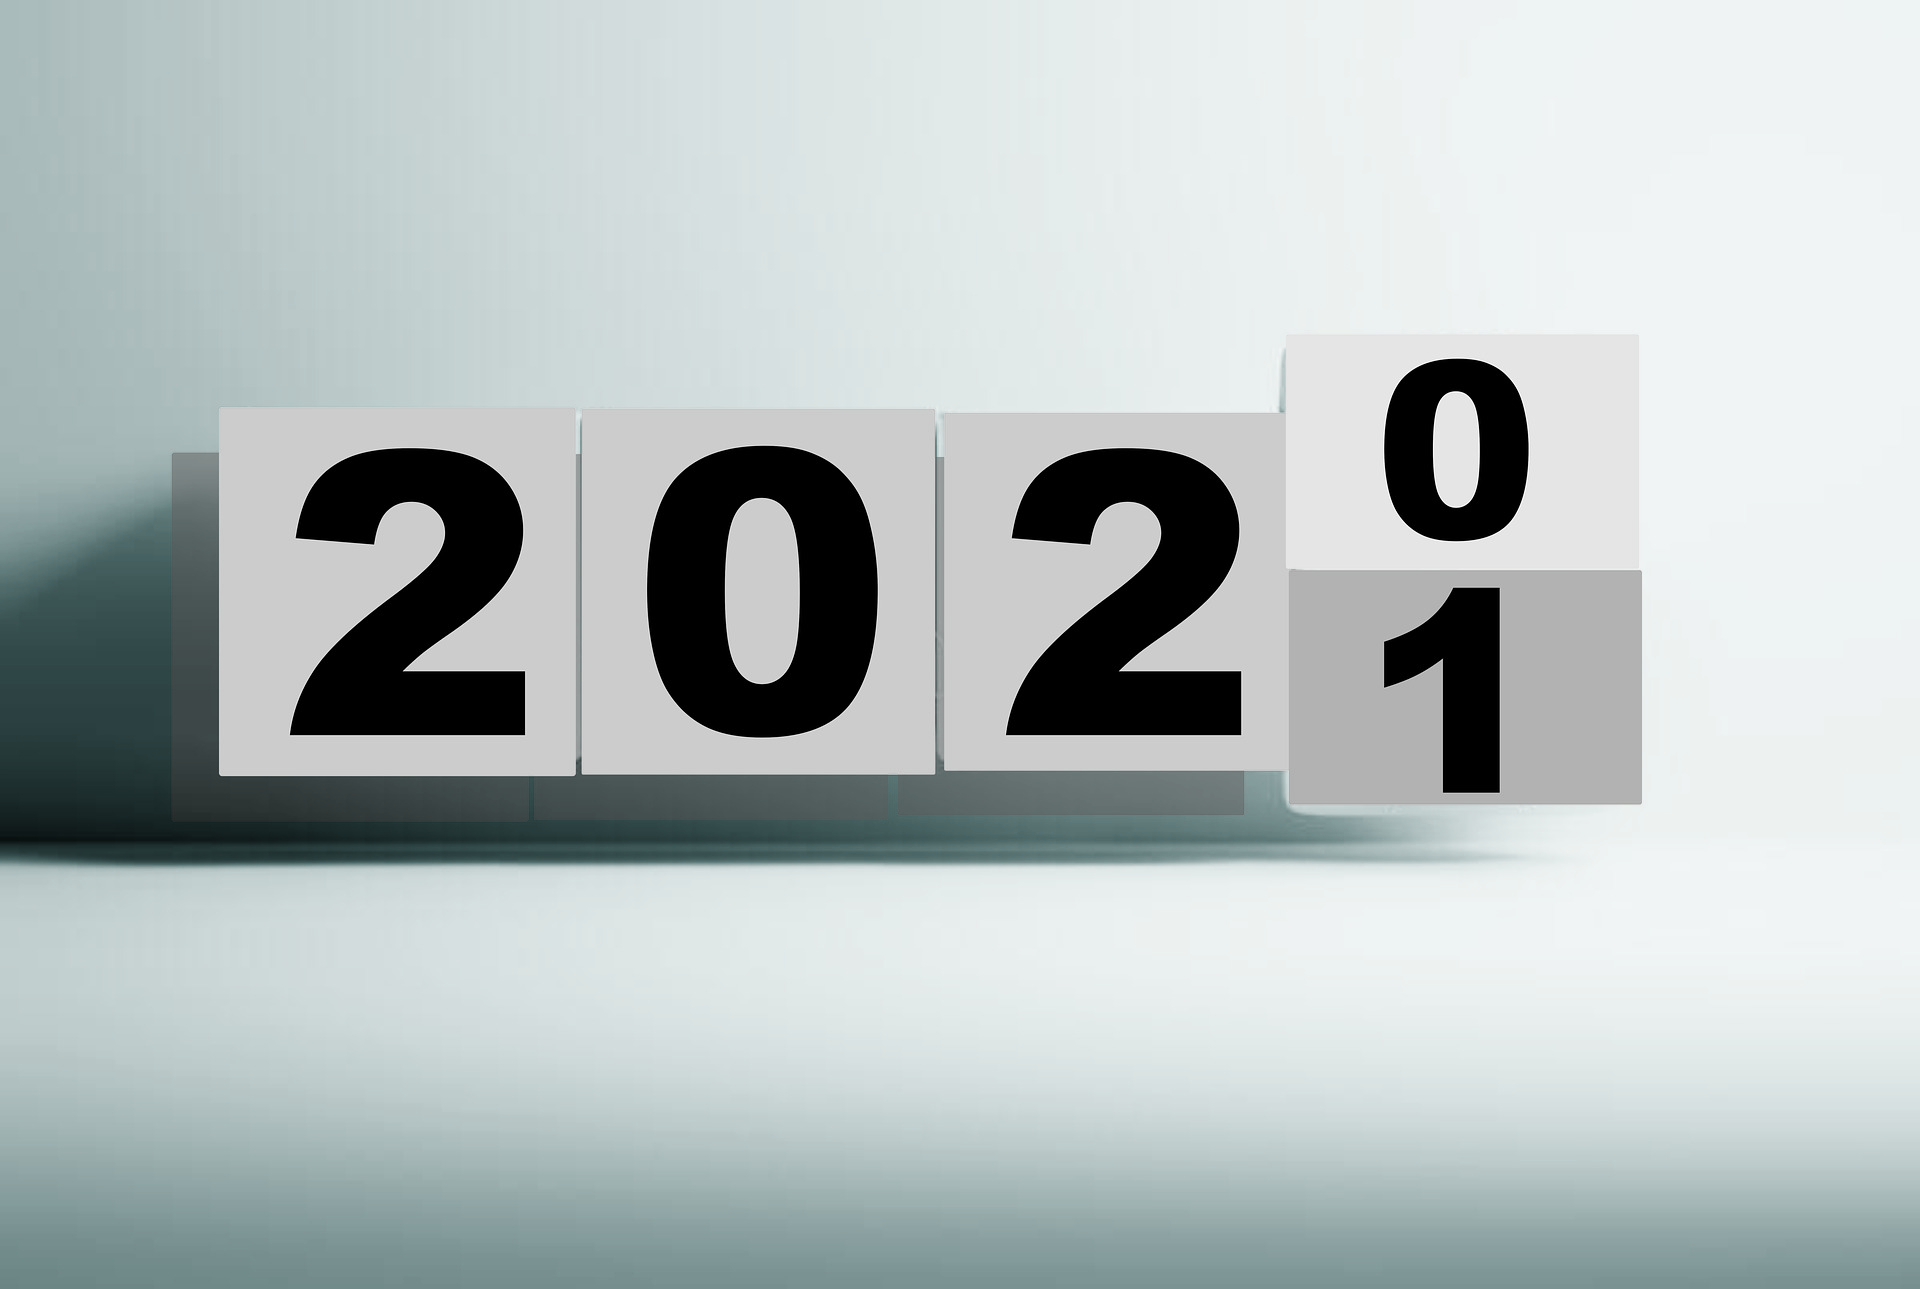 Jahreszahl wechselt von 2021 zu 2020.